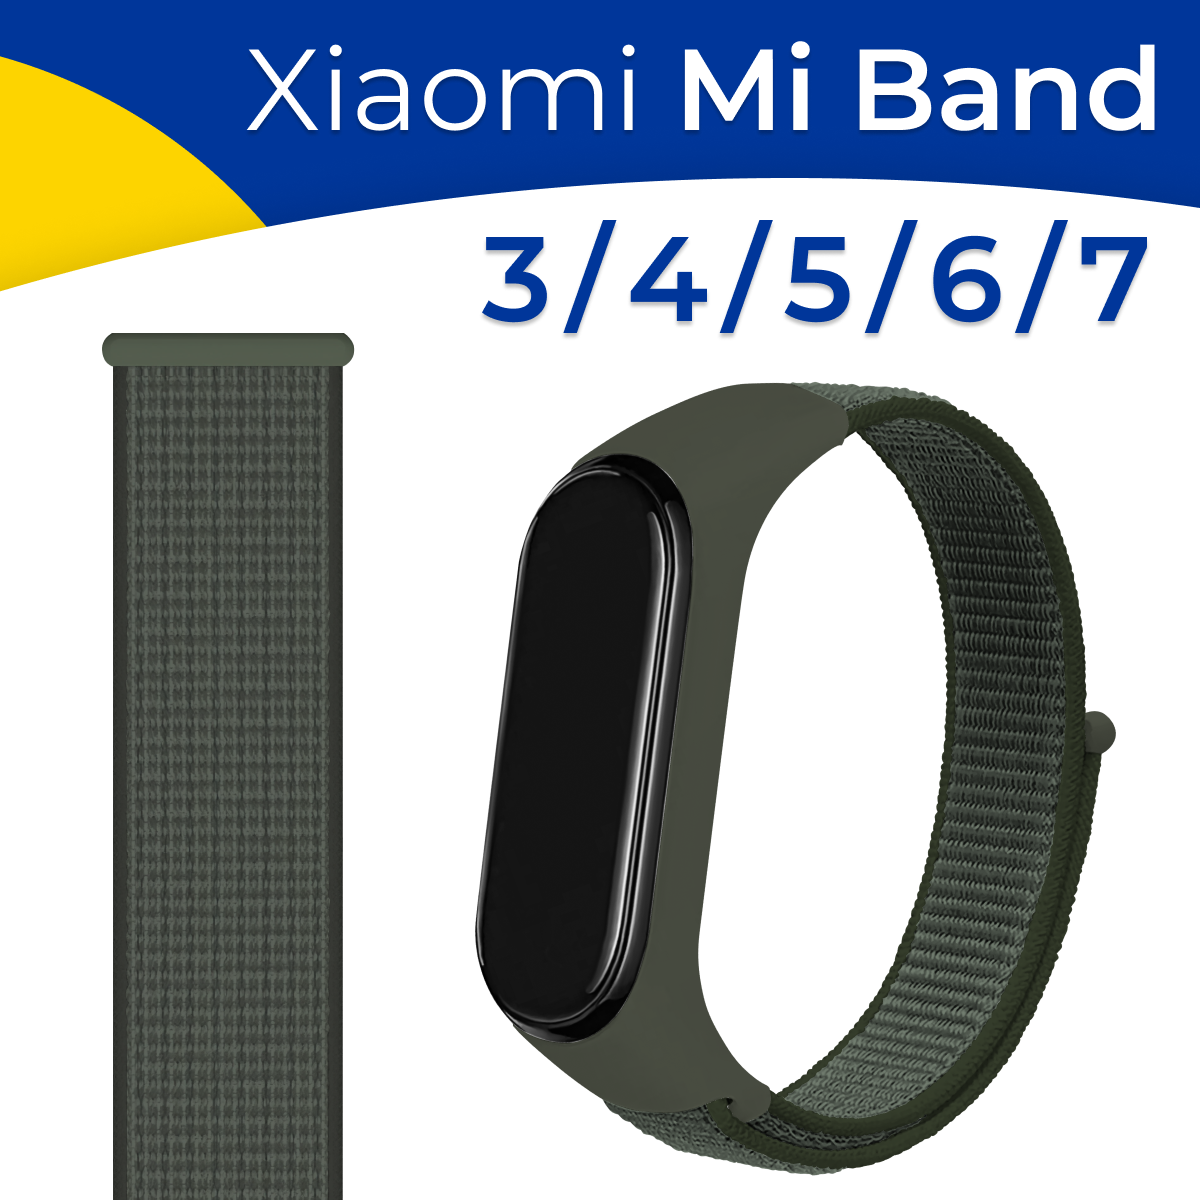 Нейлоновый ремешок для Xiaomi Mi Band 3 Mi Band 4 Mi Band 5 Mi Band 6 и Mi Band 7 / Синий браслет для смарт часов Сяоми Ми Бэнд 3 4 5 6 и 7